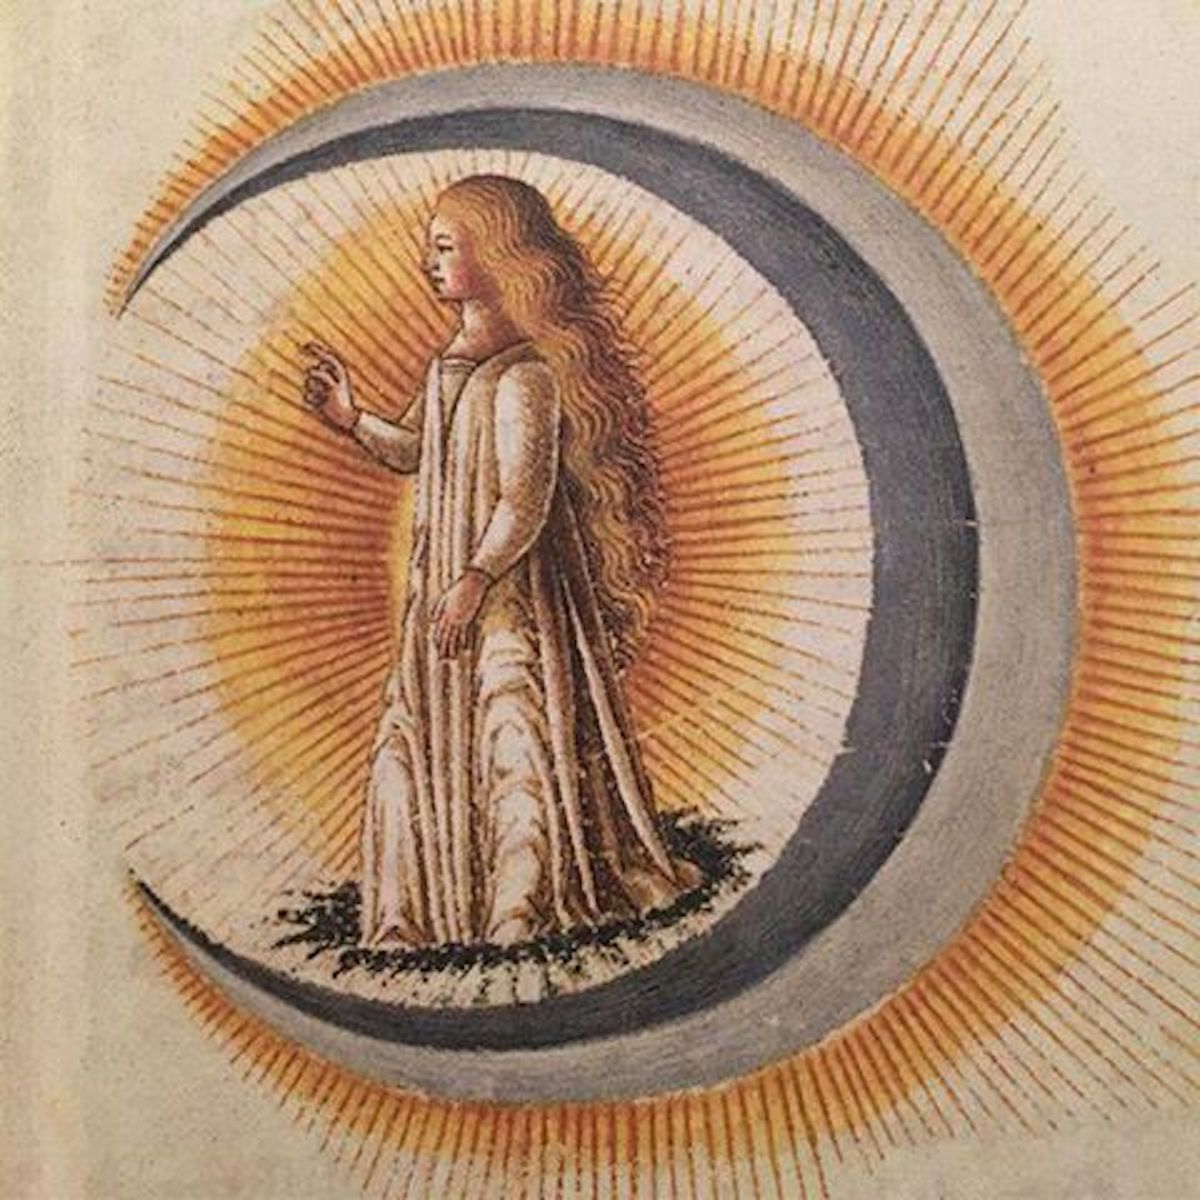 advent 5 ‘Luna’, from the wedding book Le nozze di Costantio Sforza e Camilla d'Aragona, 1480